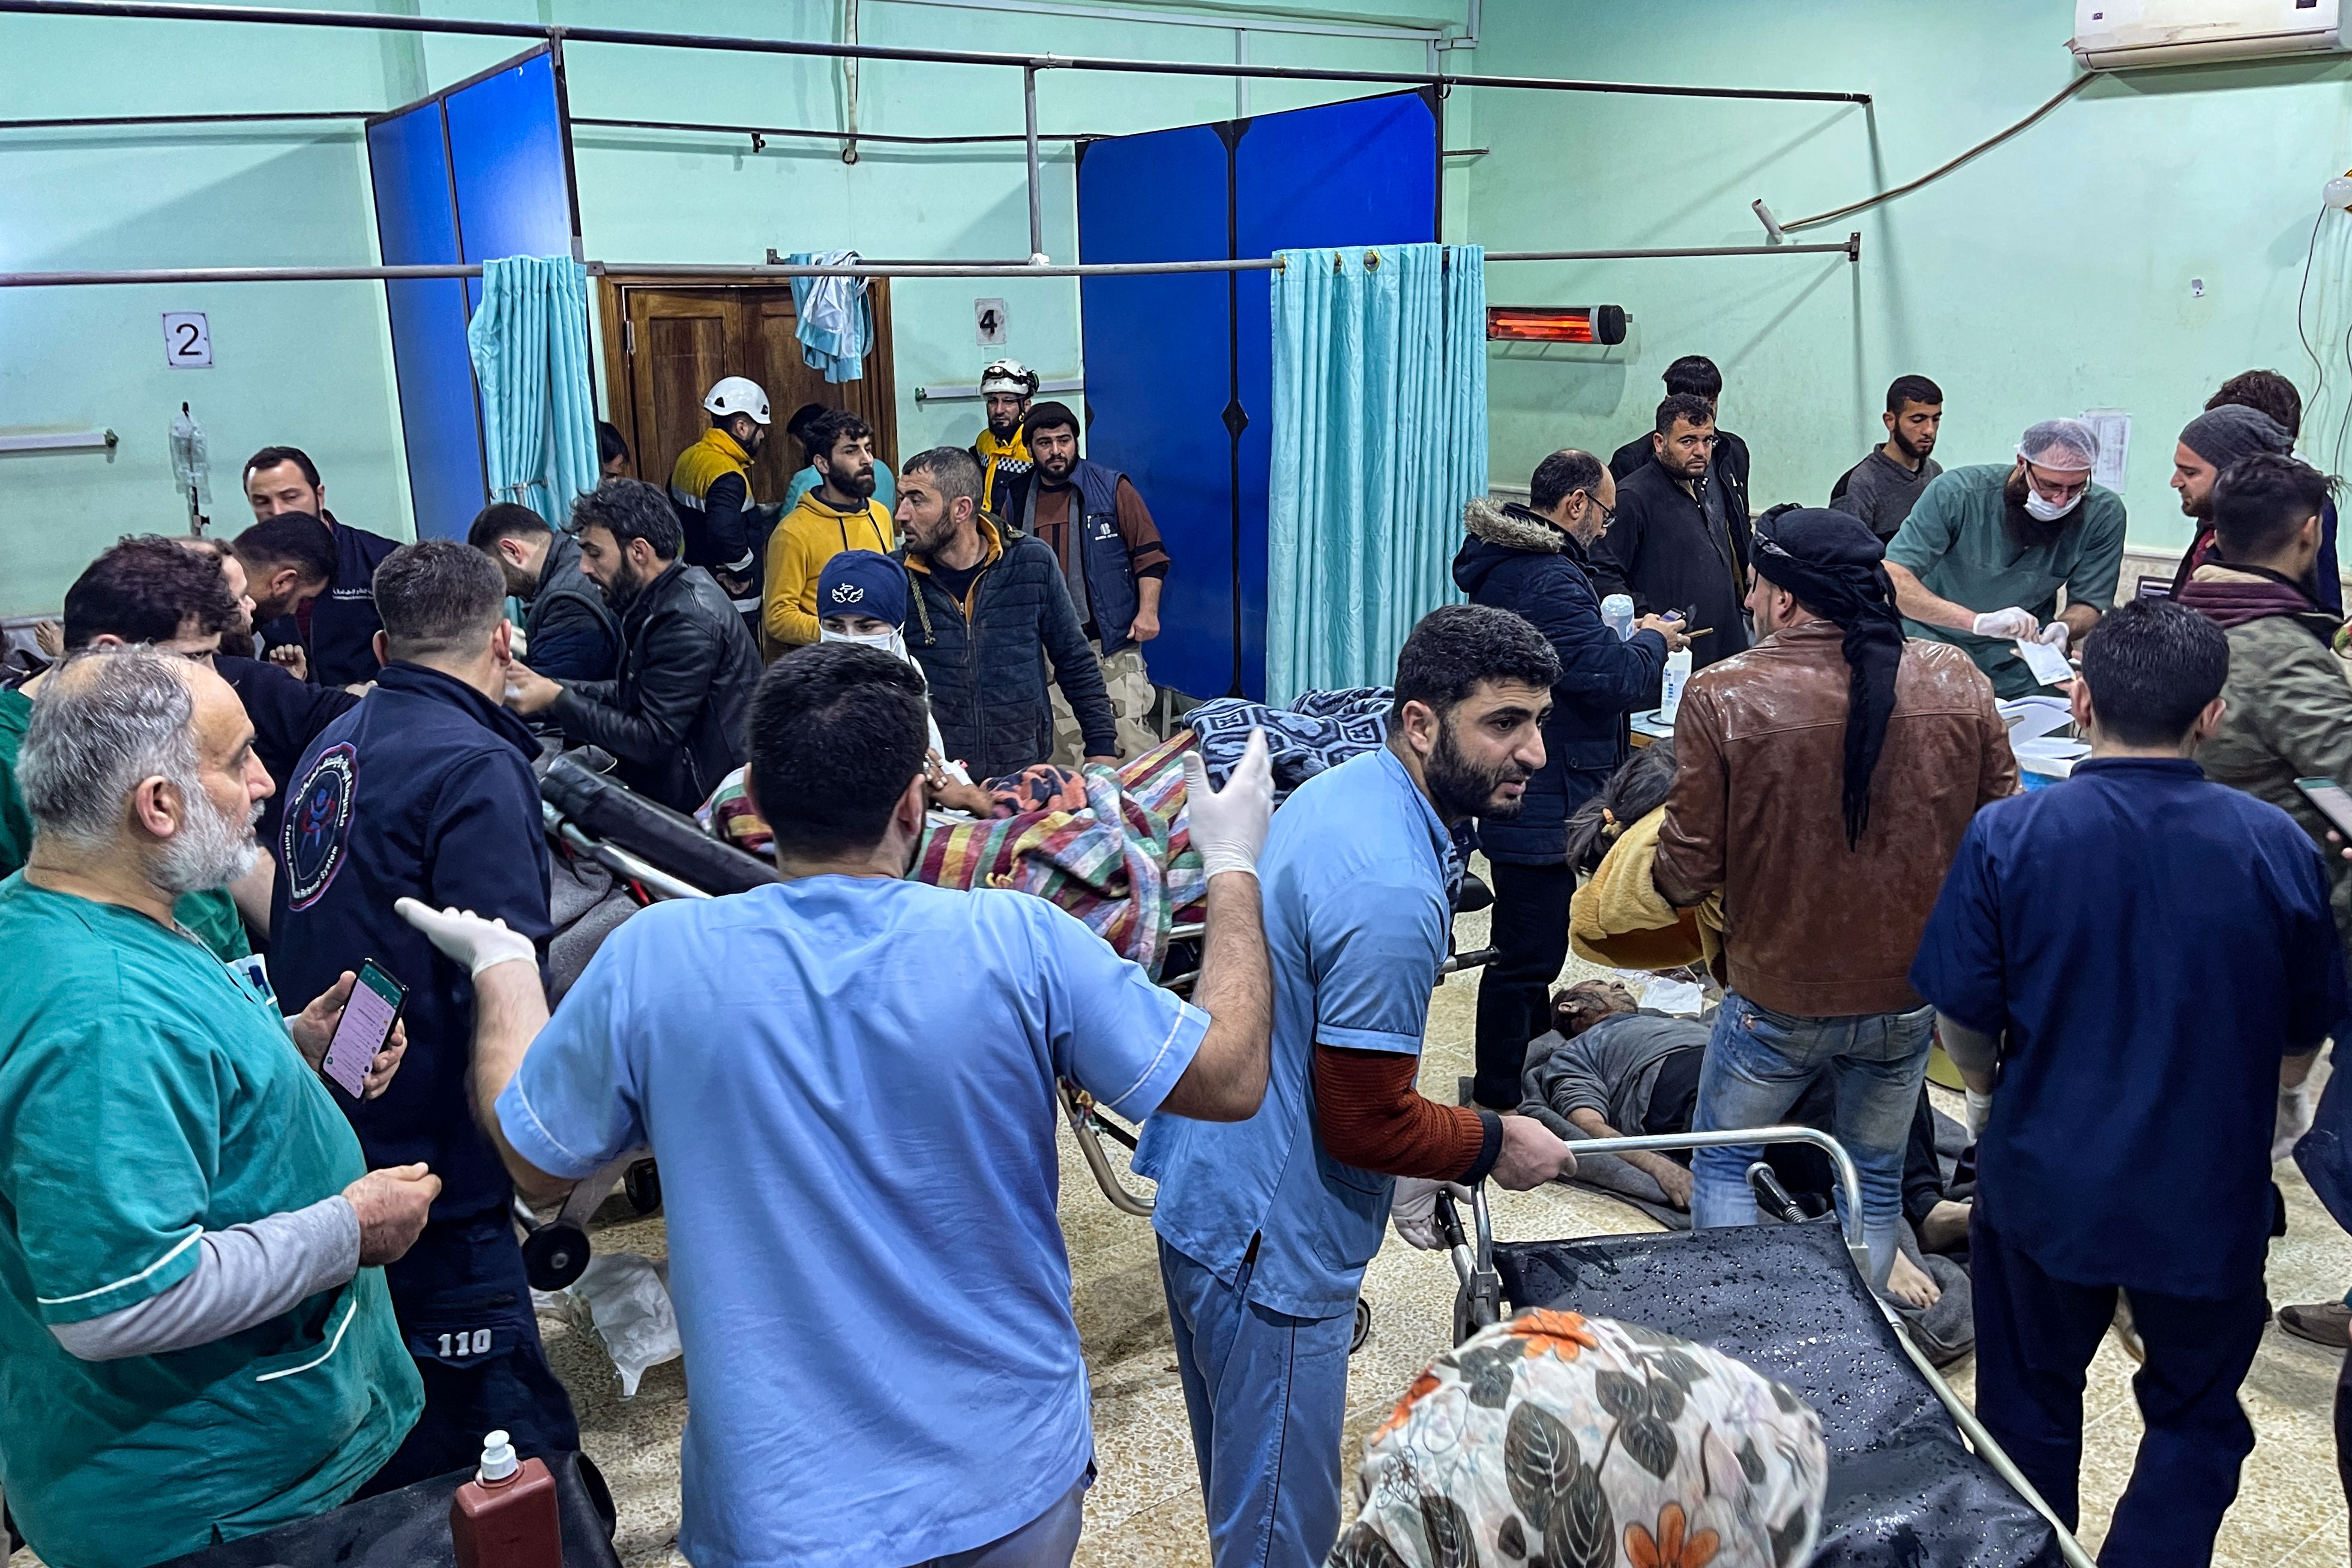 Las víctimas son llevadas de urgencia a la sala de emergencias del hospital Bab al-Hawa luego de un terremoto, en el campo del norte de la provincia siria de Idlib, controlada por los rebeldes, en la frontera con Turquía, a primeras horas del 6 de febrero de 2023. - Según los informes, al menos 50 han muerto.